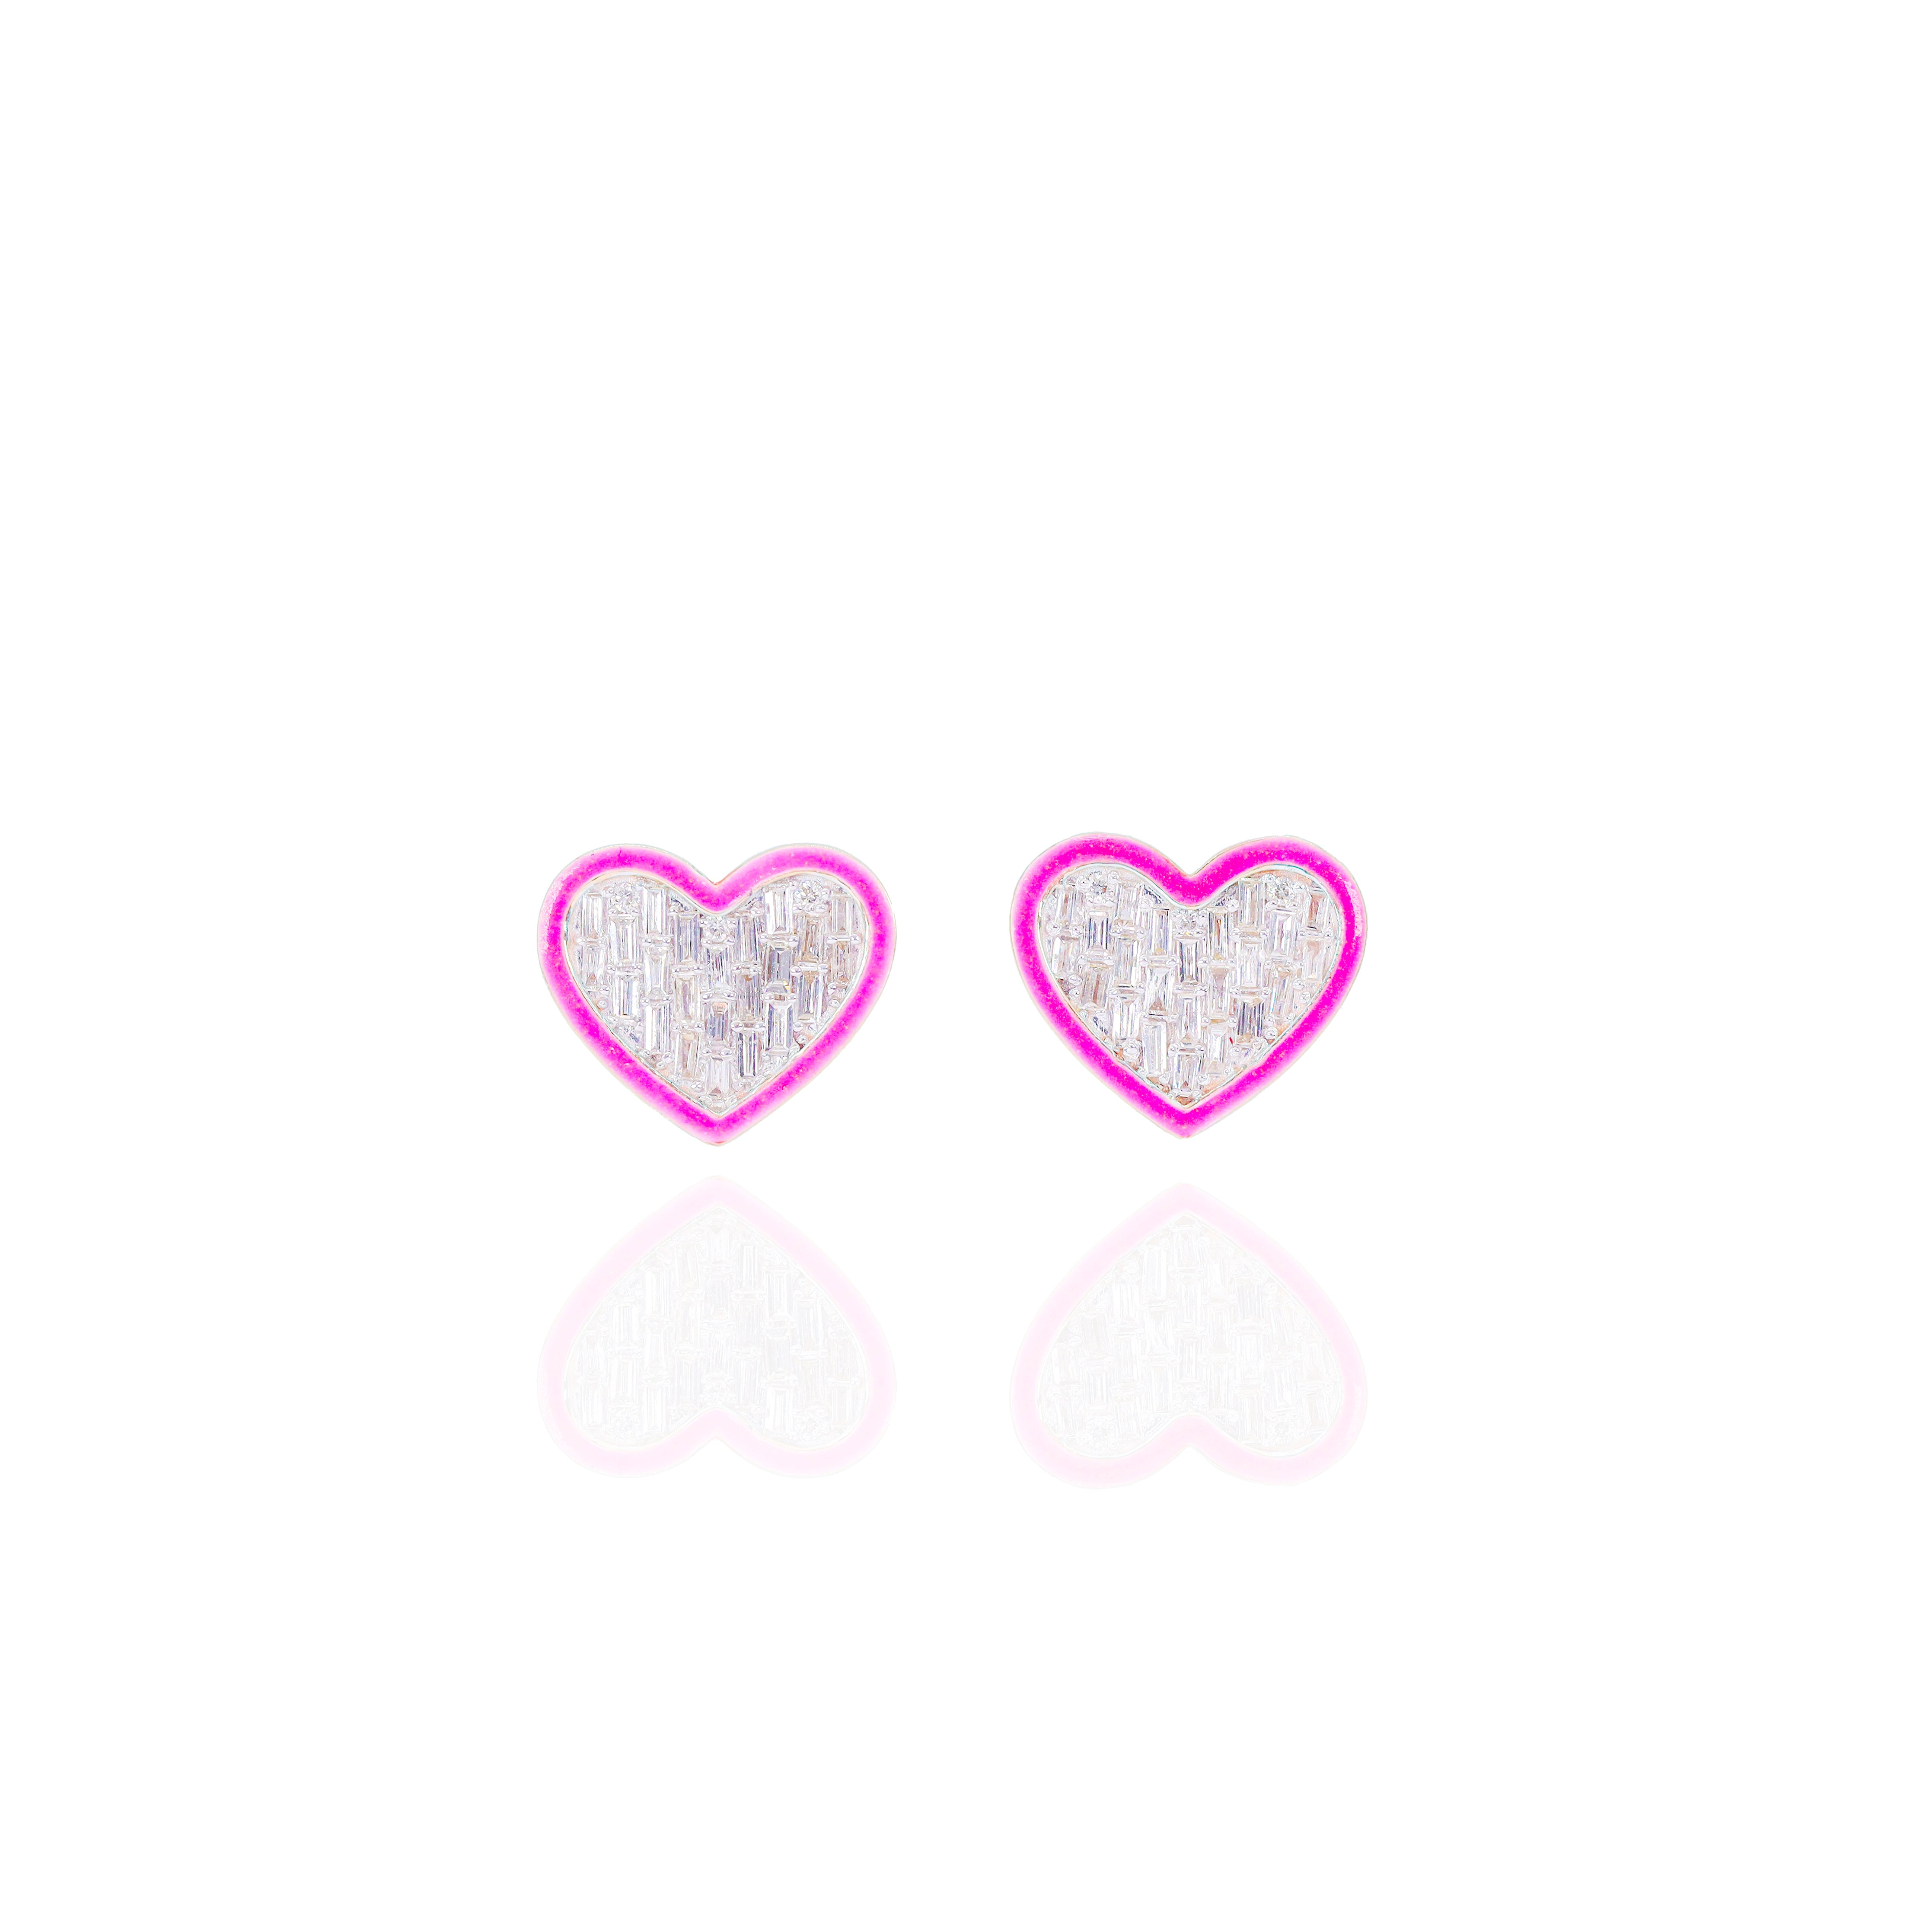 Baguette Diamond Heart Earrings w/ Pink Enamel Border